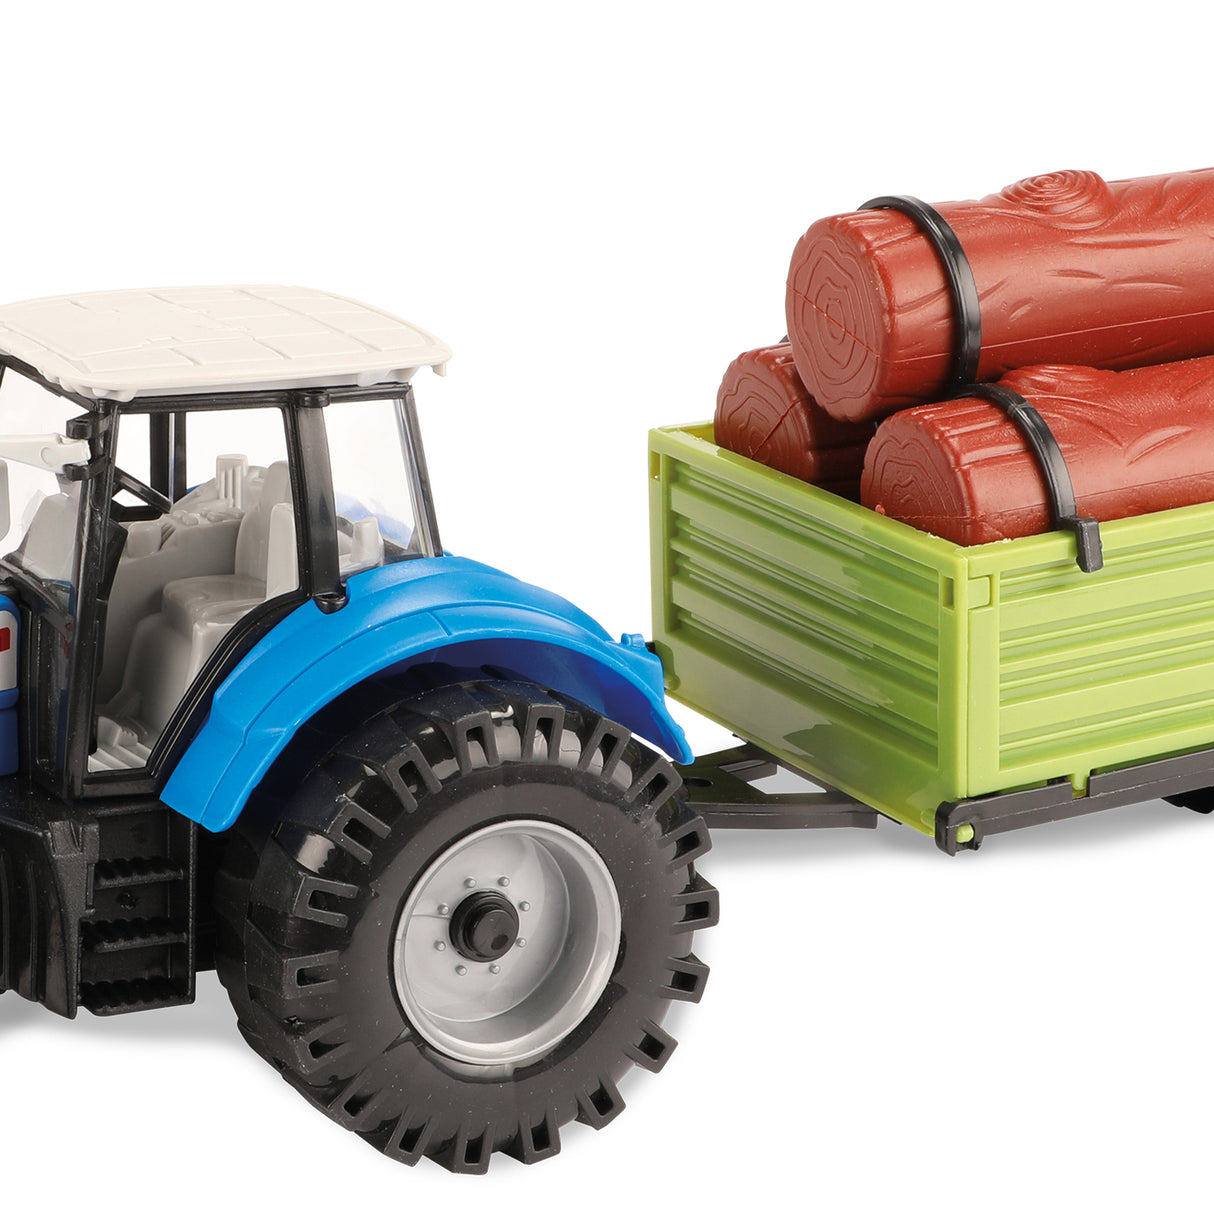 Traktor und Anhänger Spielzeug mit Friktionsmotor